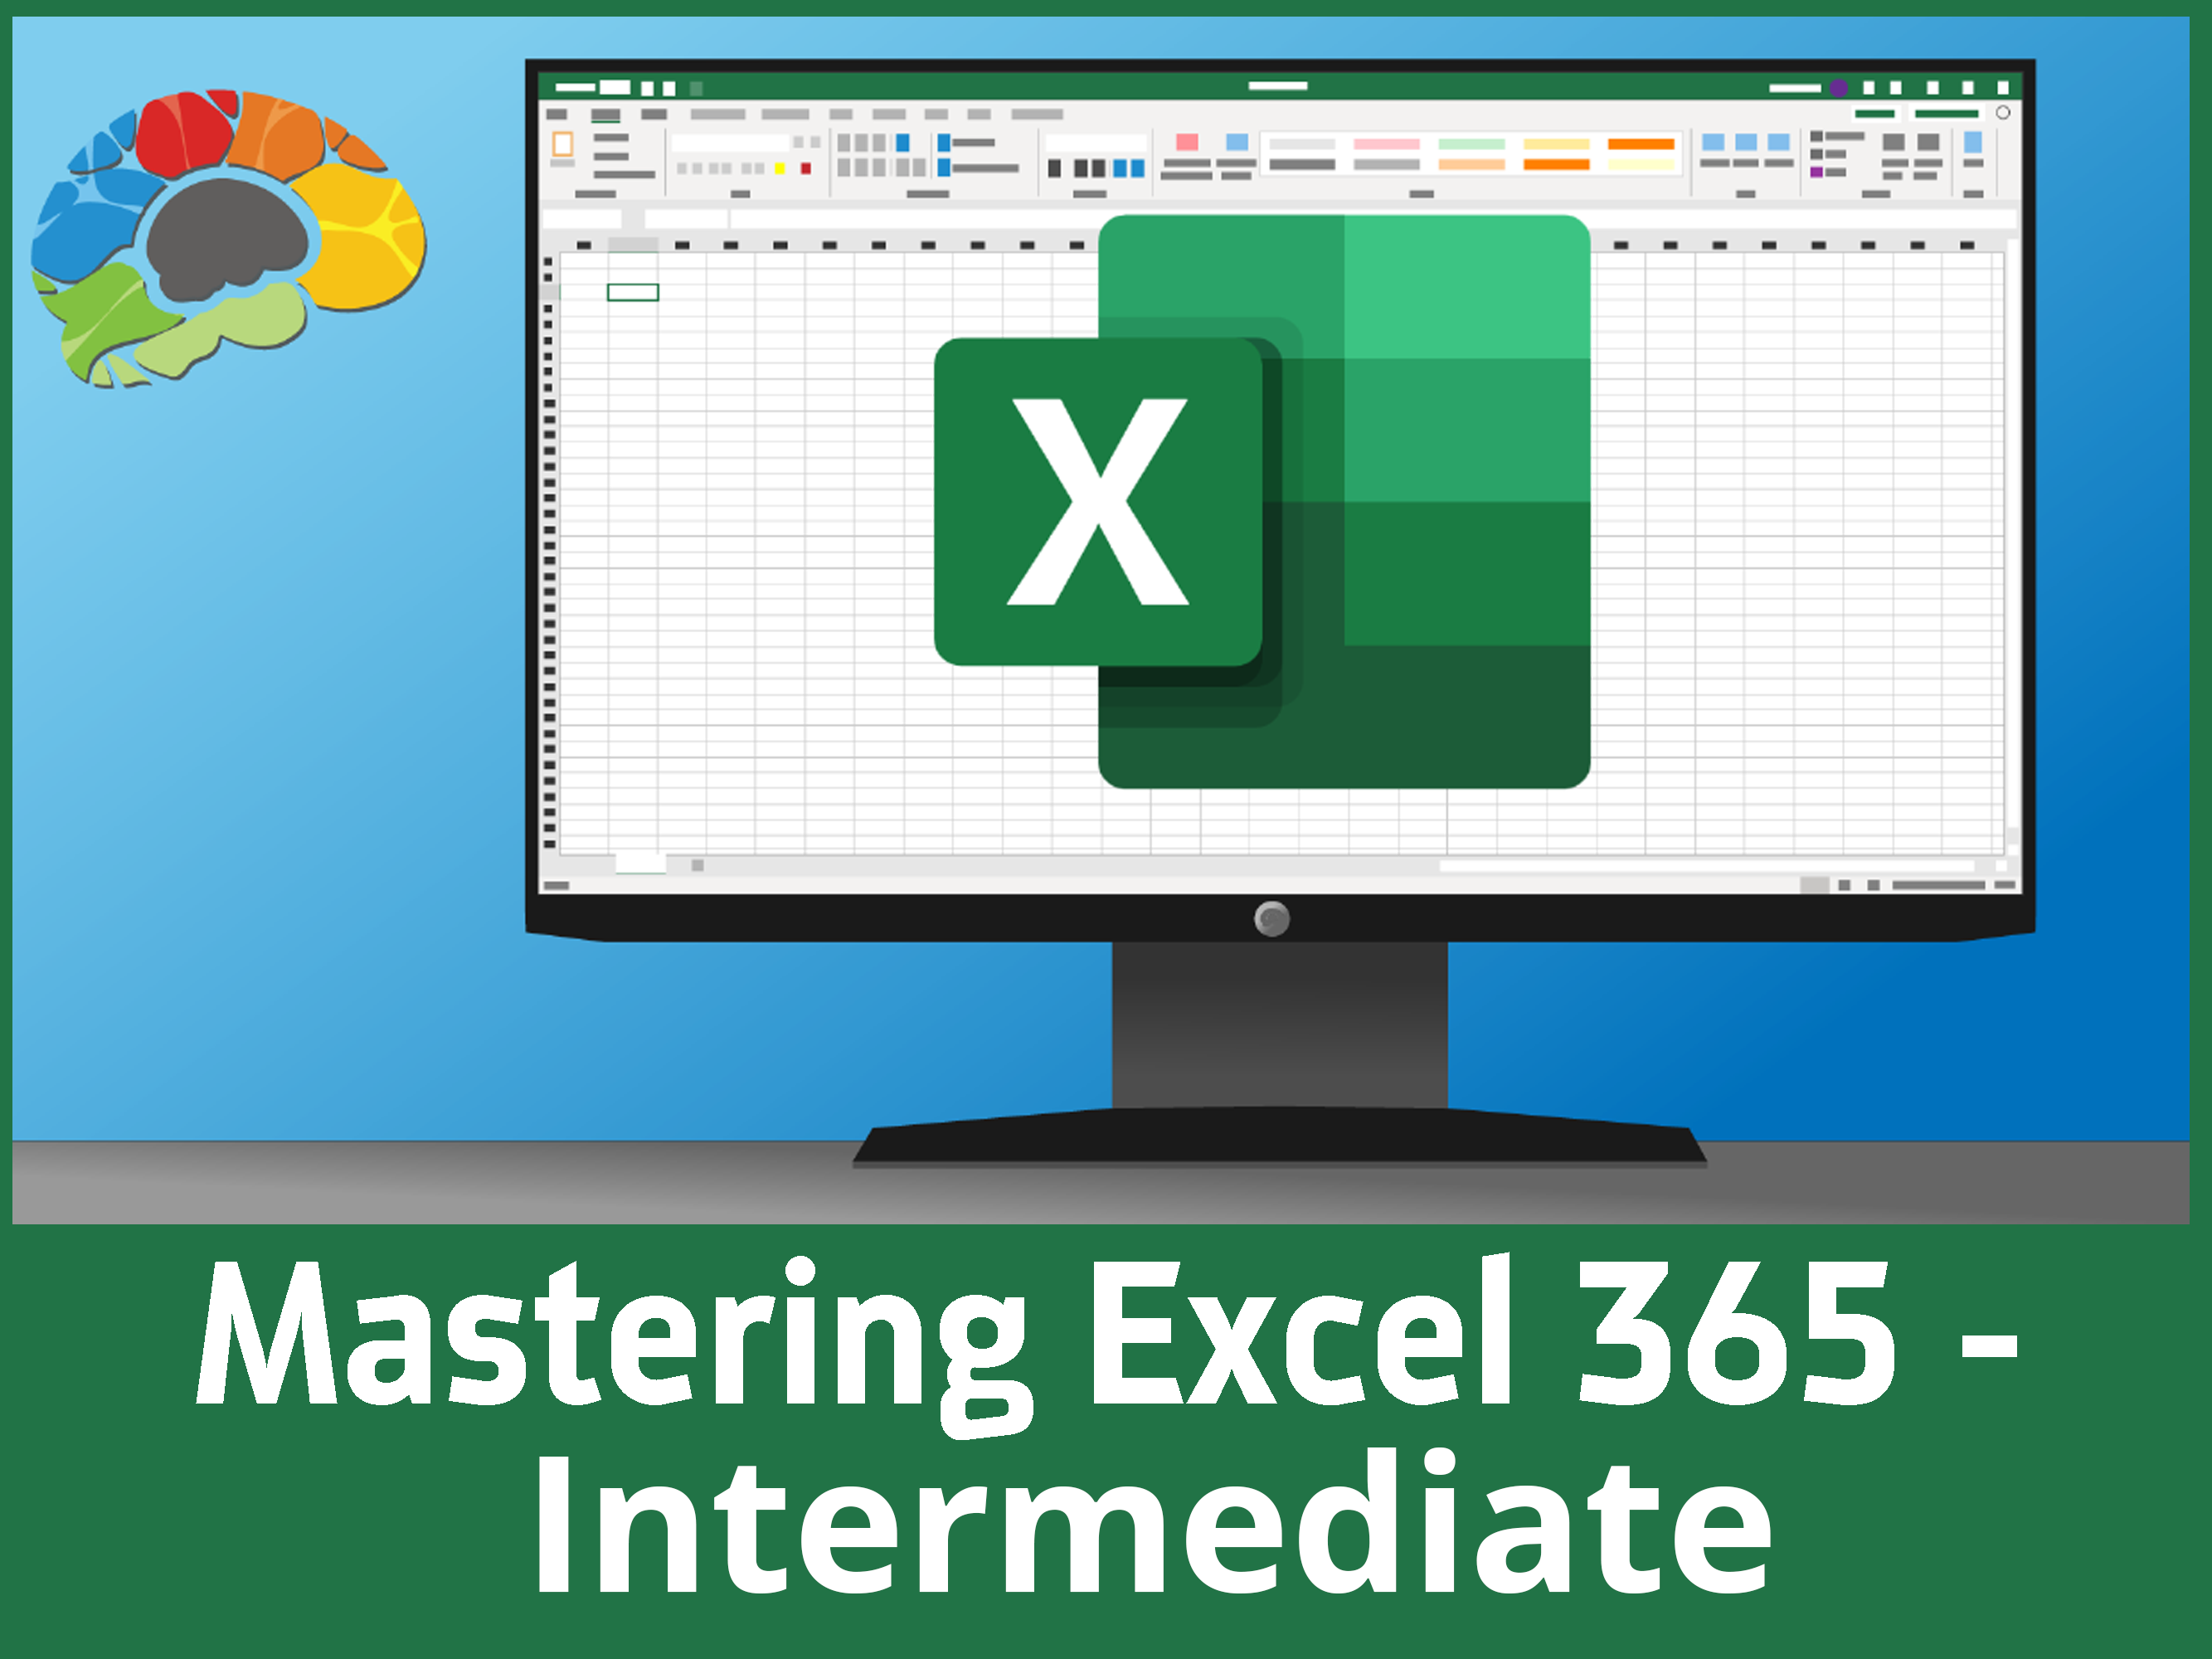 Mastering Excel 365 - Intermediate